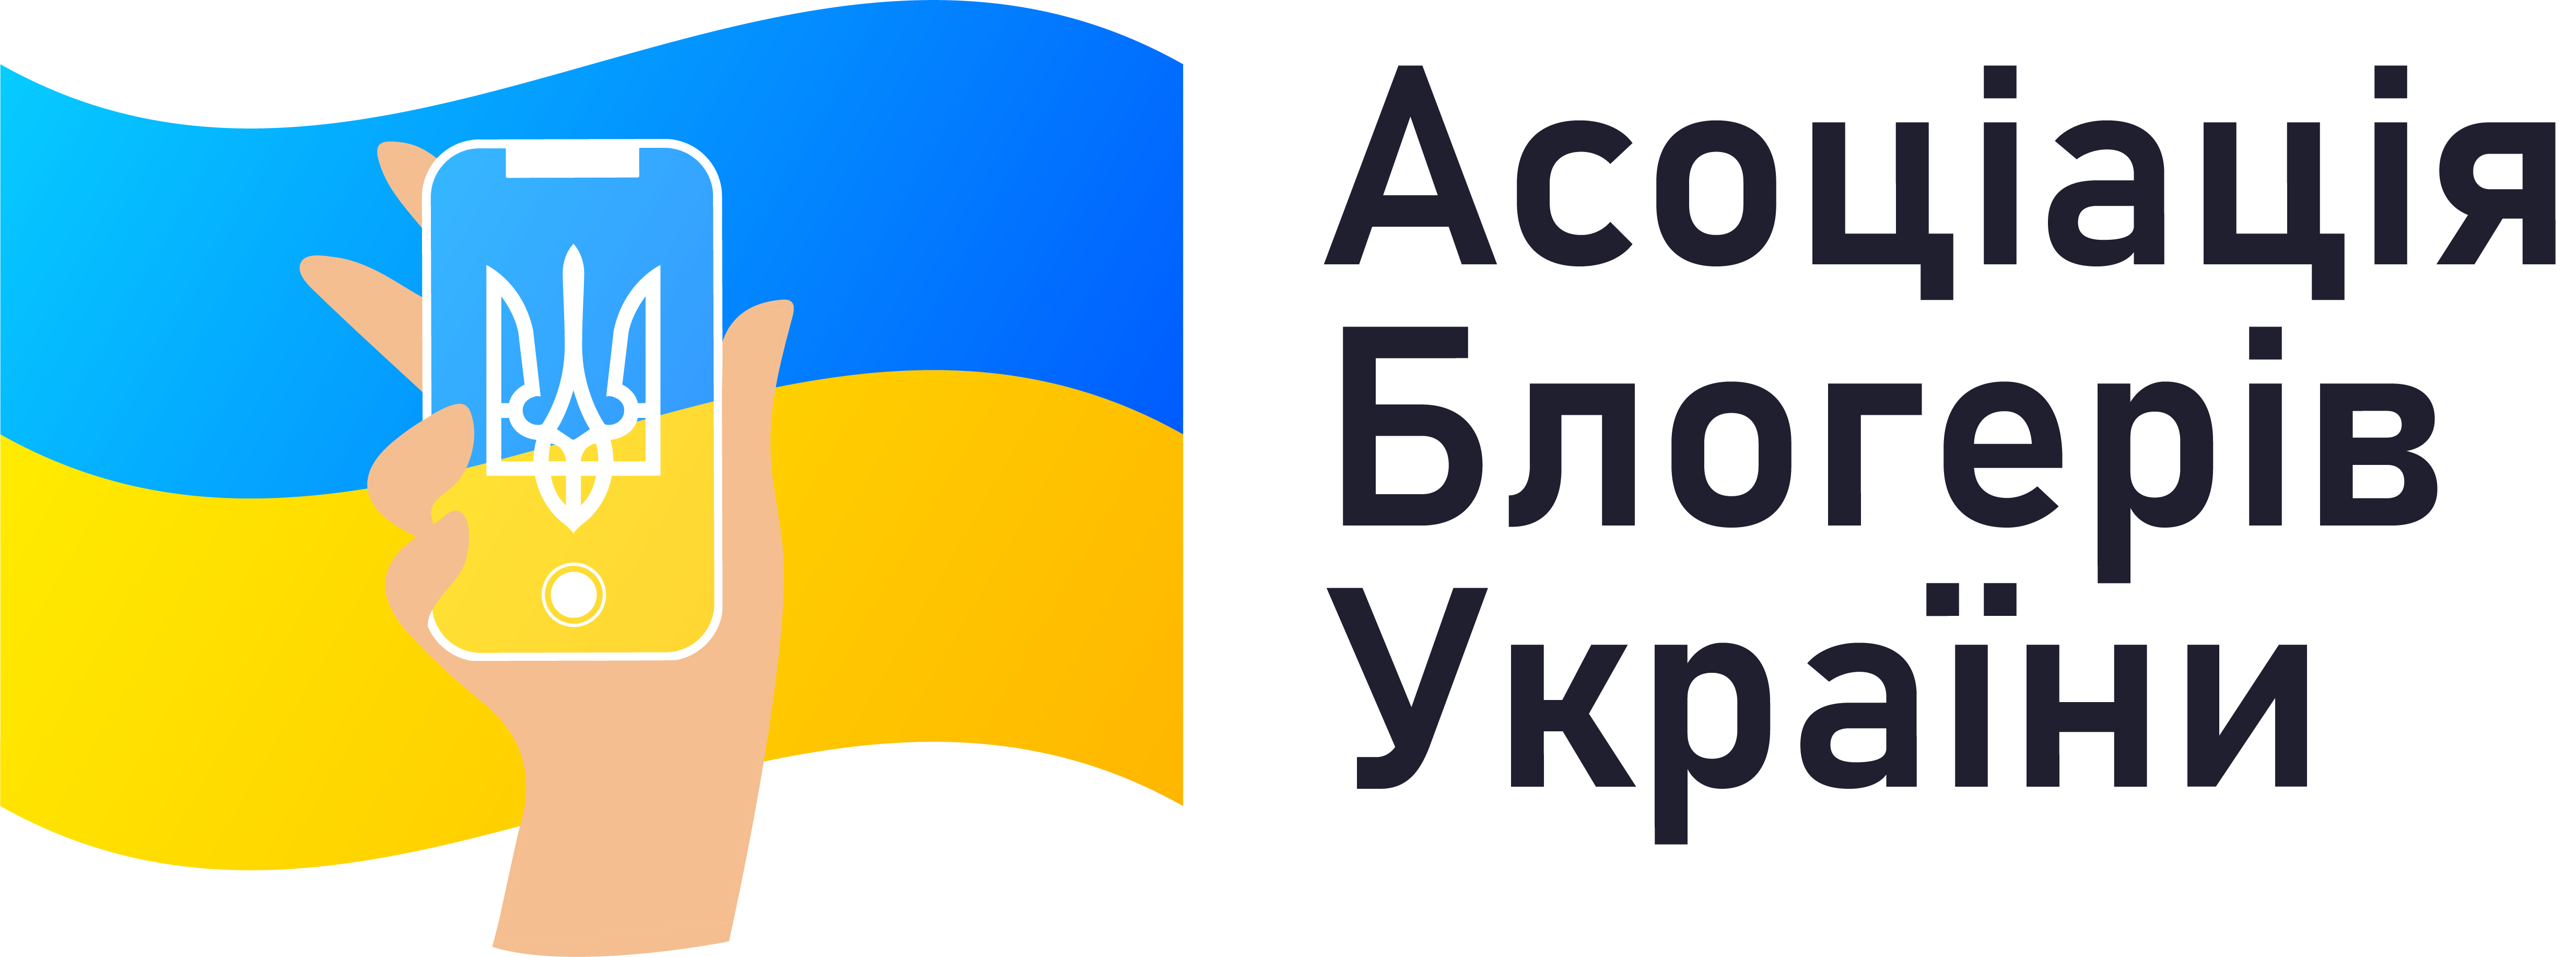 Ассоциация блогеров Украины